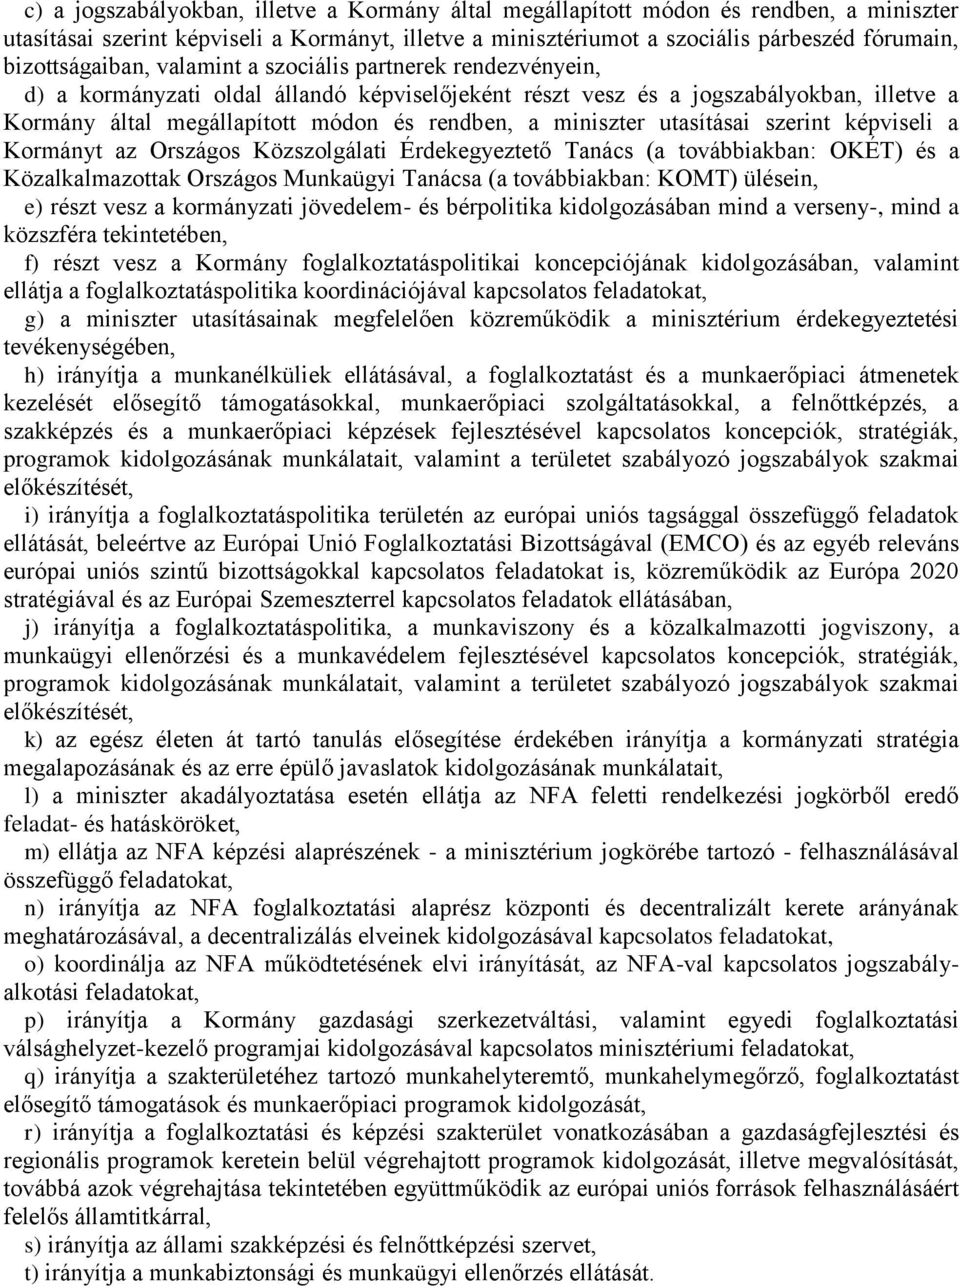 miniszter utasításai szerint képviseli a Kormányt az Országos Közszolgálati Érdekegyeztető Tanács (a továbbiakban: OKÉT) és a Közalkalmazottak Országos Munkaügyi Tanácsa (a továbbiakban: KOMT)